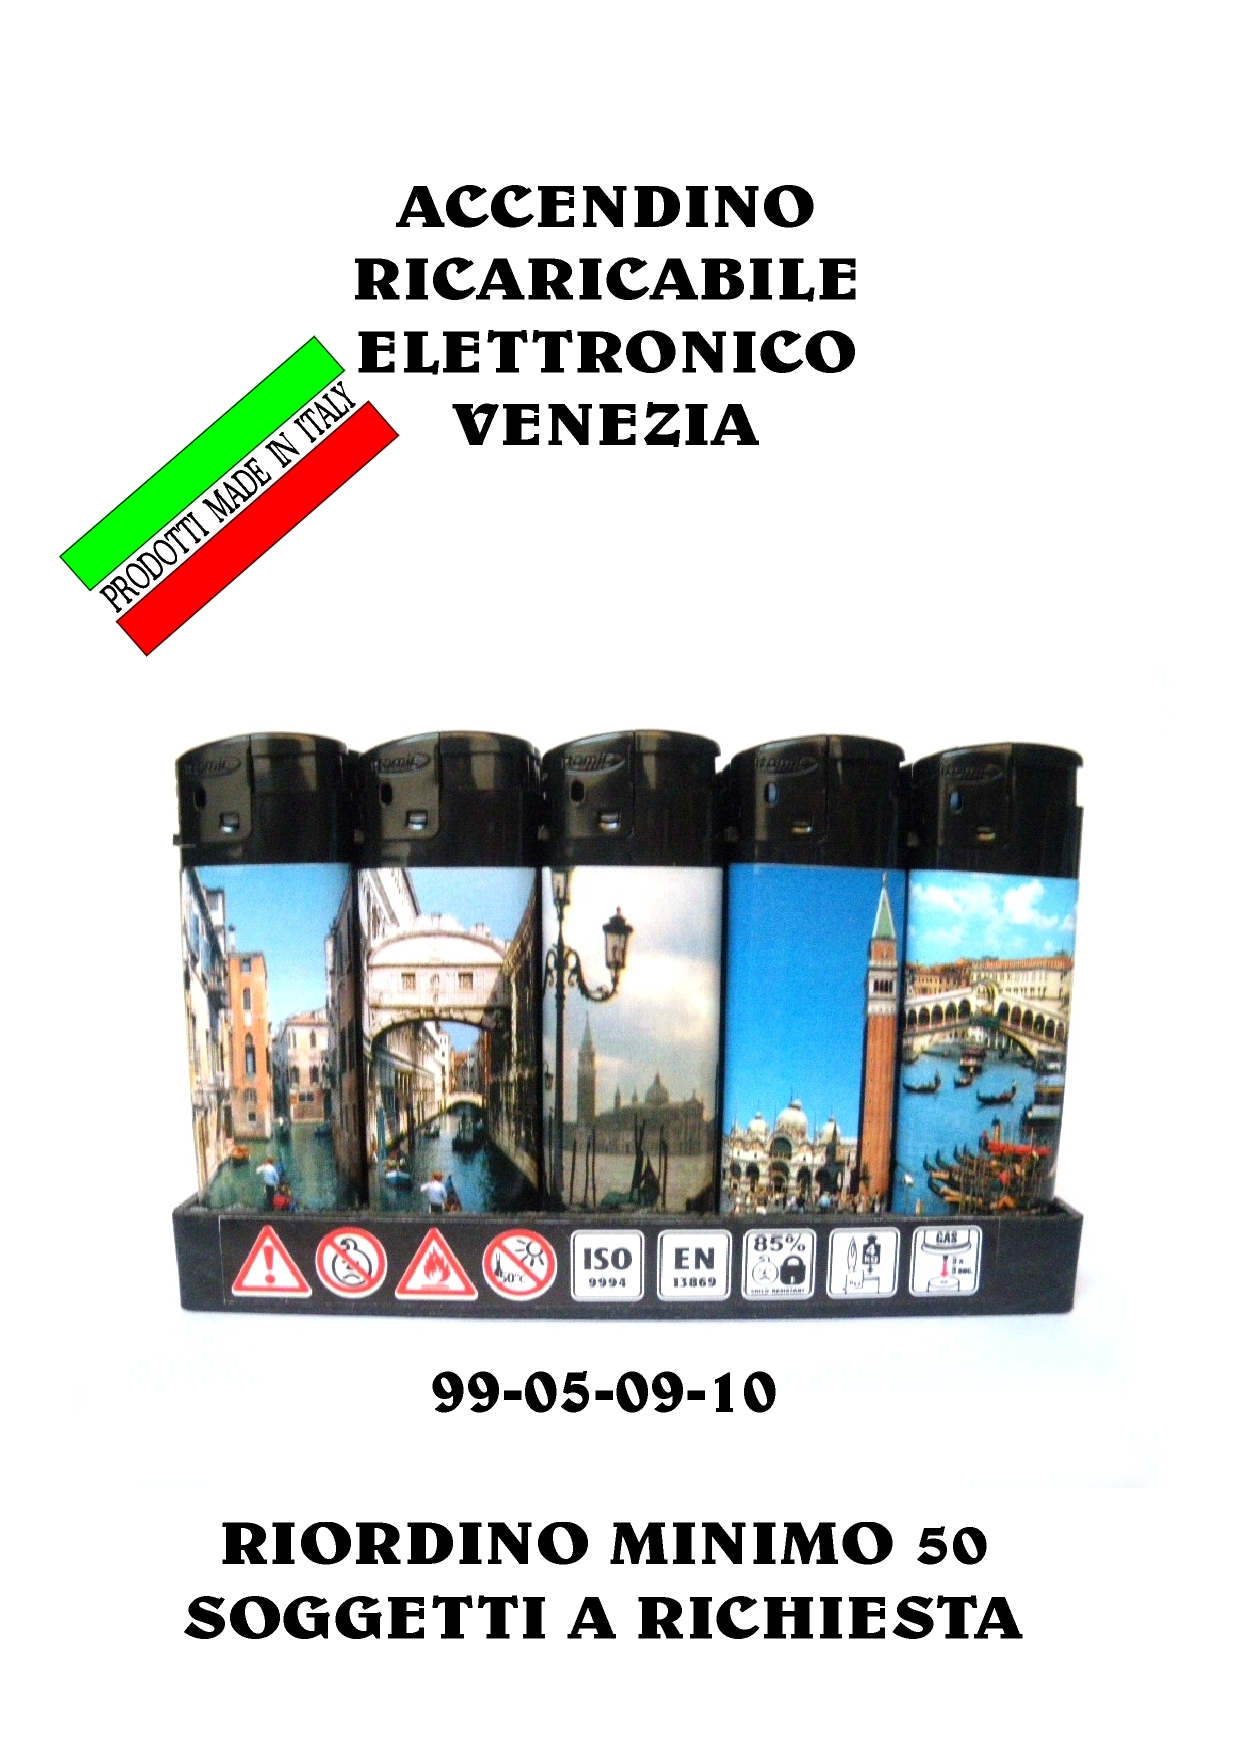 99-05-09-0010 Accendini Venezia Gettabili Assortiti CONFEZIONI da n.50 Pz.